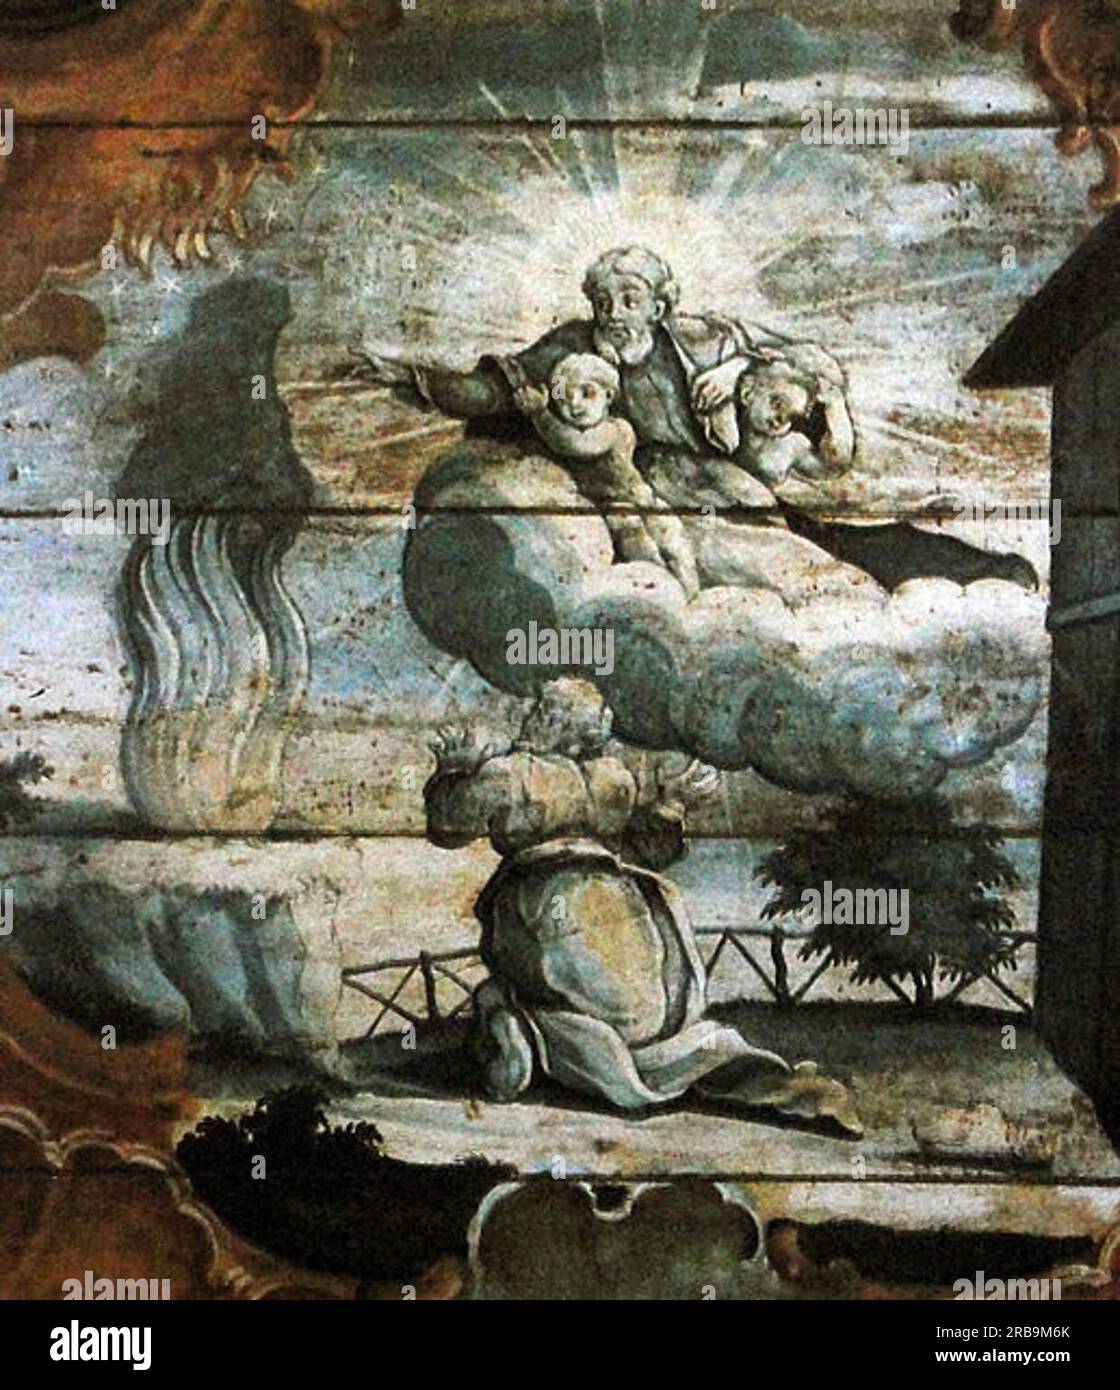 Deus promete a Abraão multiplicar sua descendência 1799 by Mestre Ataíde Stock Photo